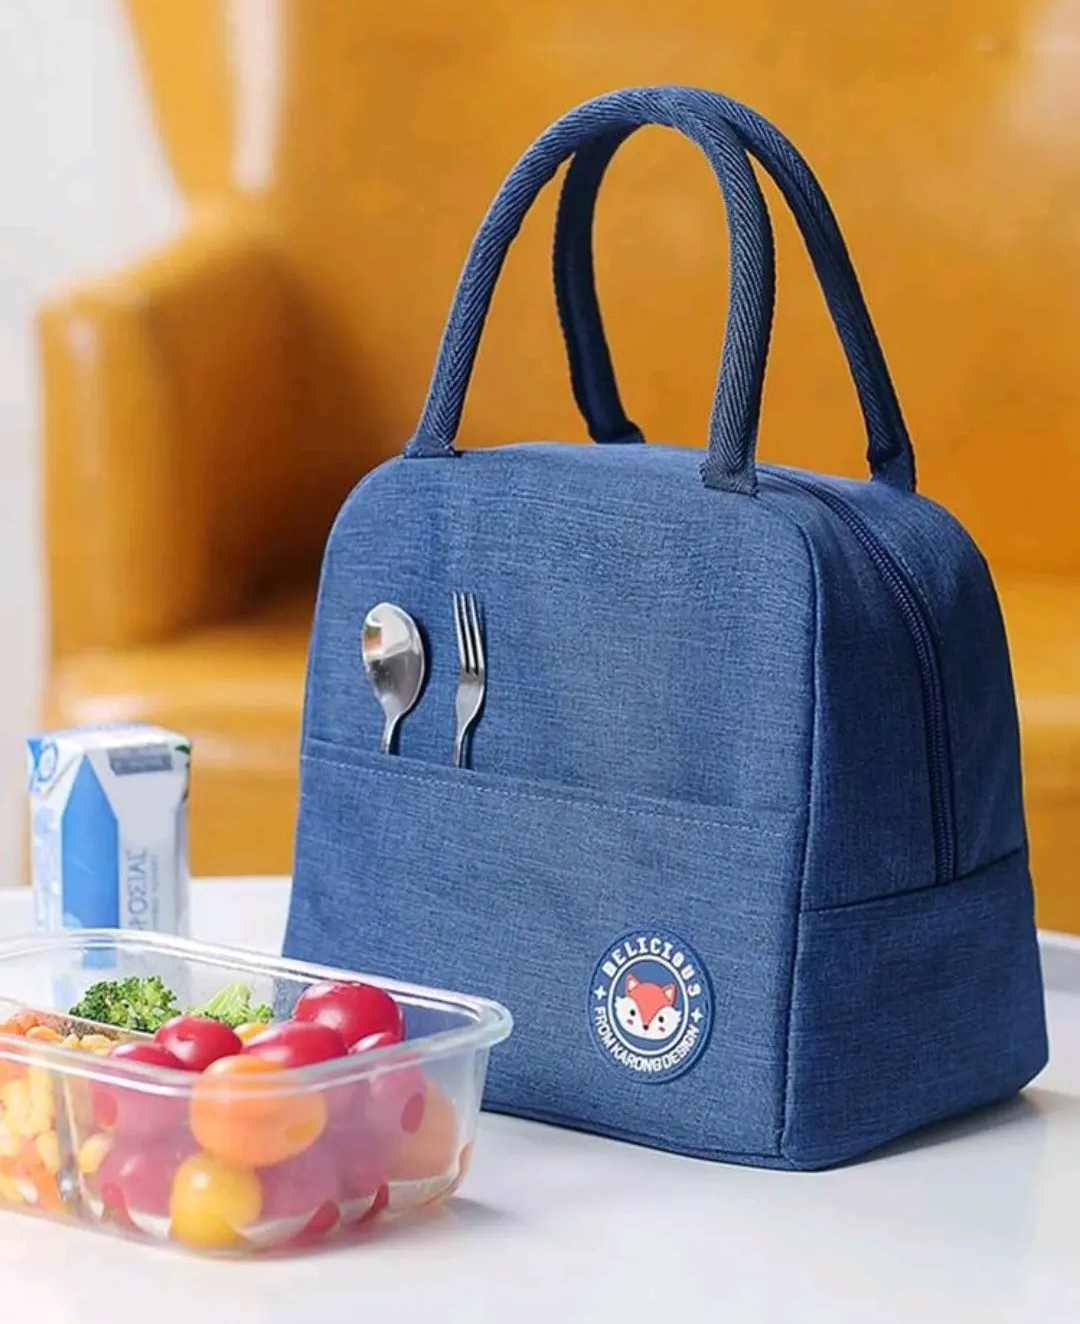 Yemək çantası / Lunch Bag / Fox